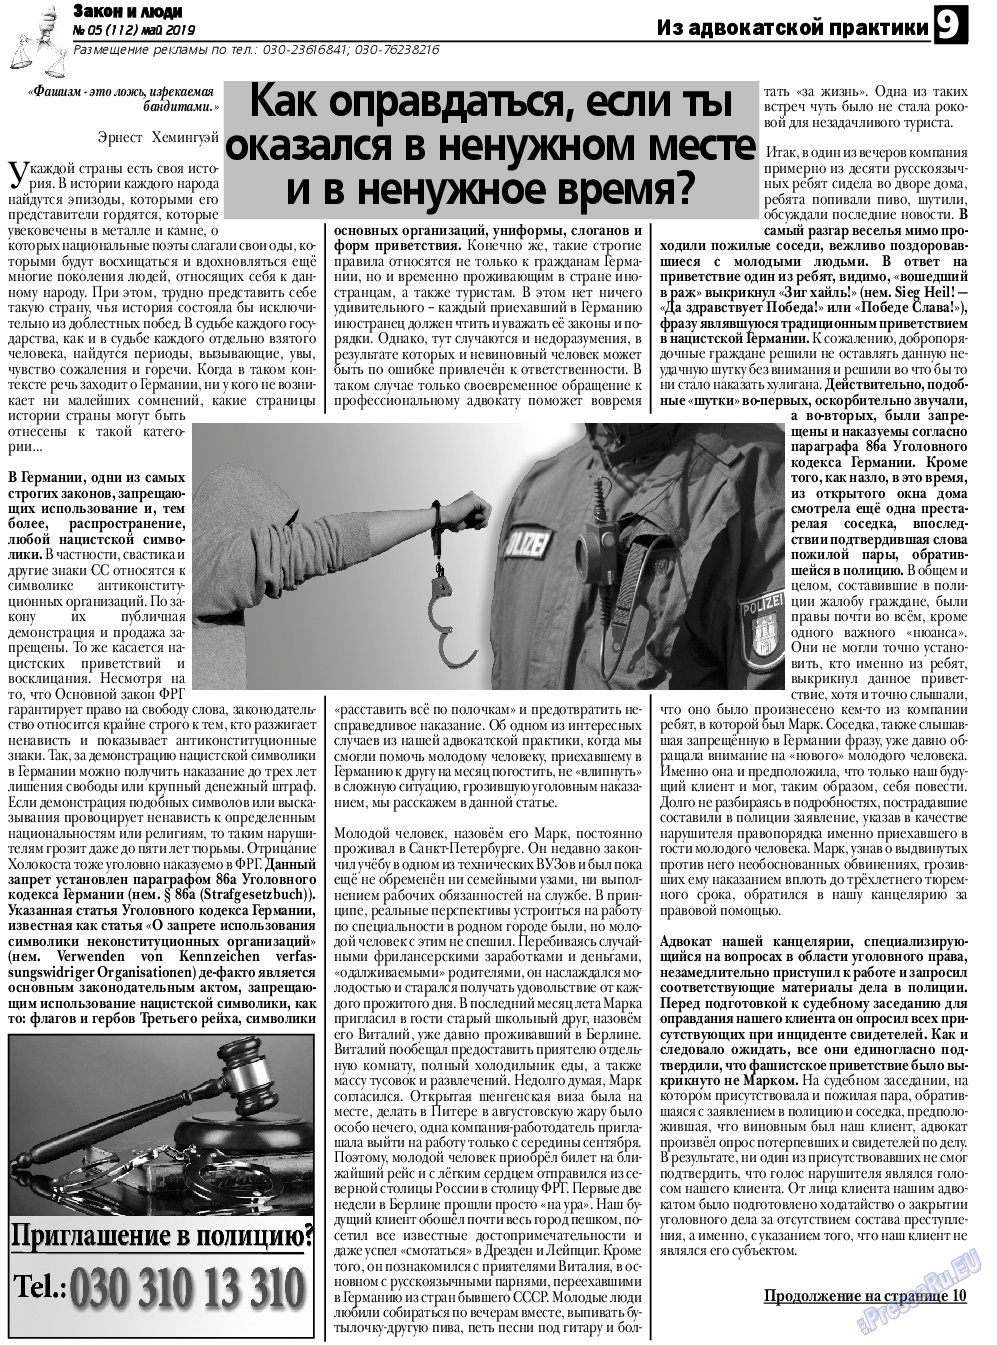 Закон и люди, газета. 2019 №5 стр.9